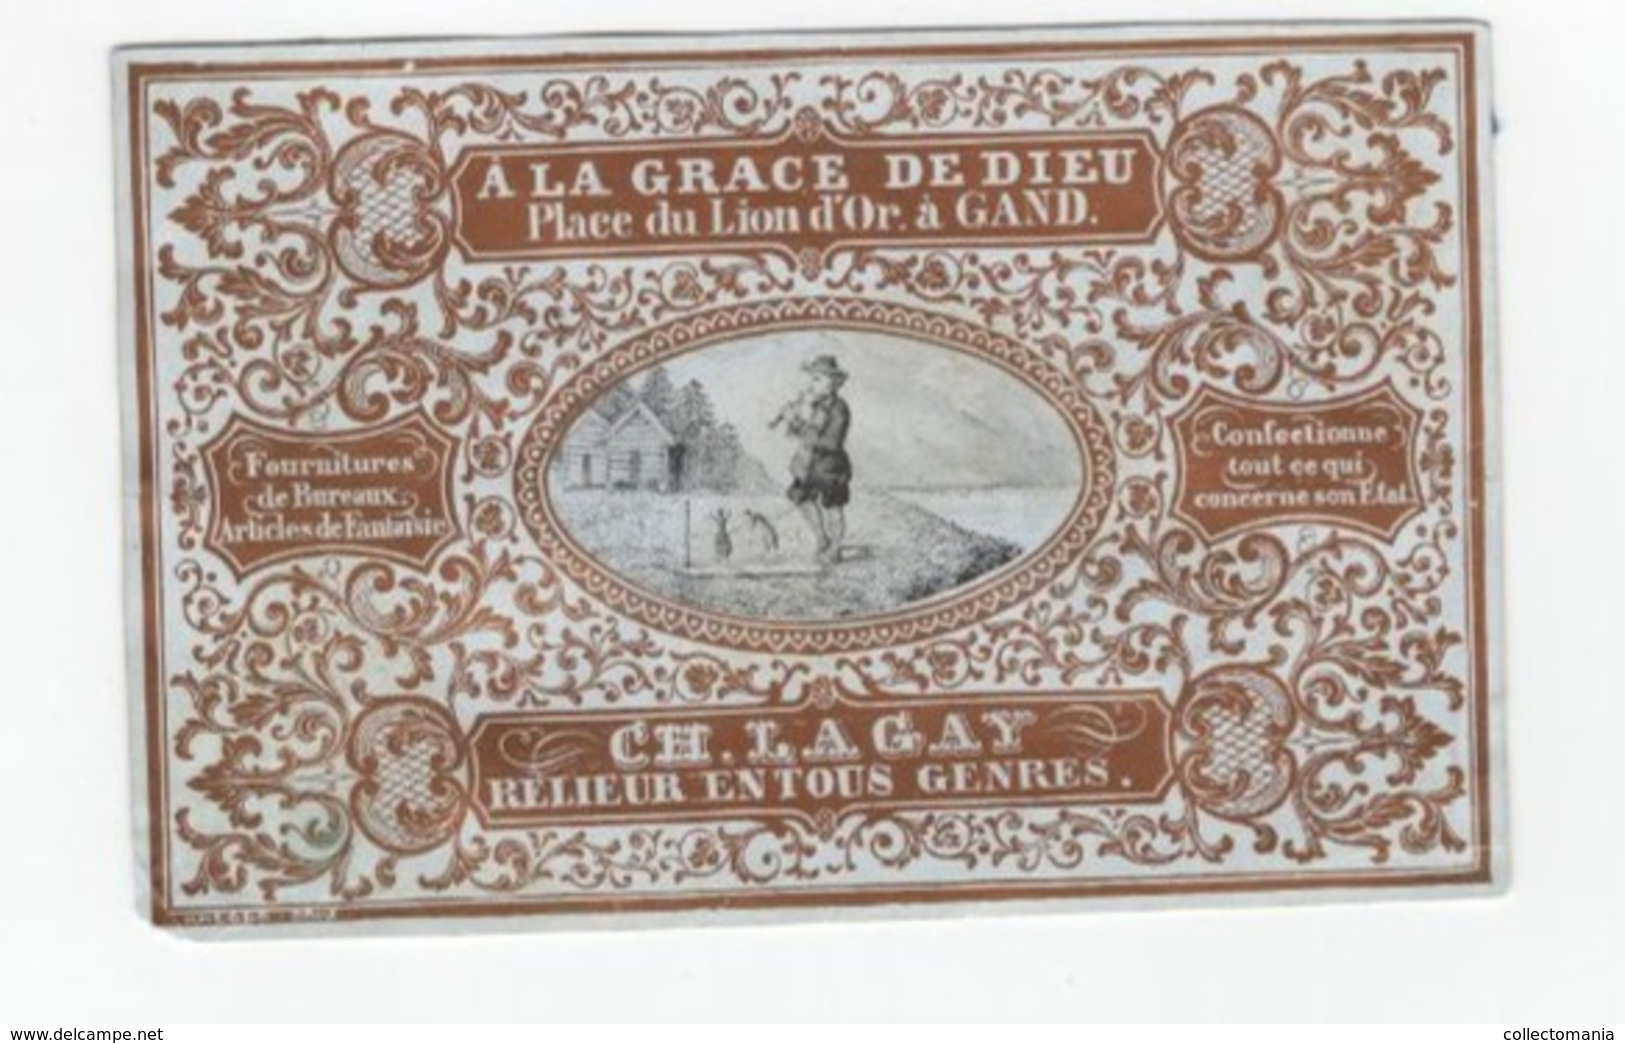 1 Carte Porcelaine A La Grace De Dieu Place Du Lion D'Or Gand  :Ch.Gay Relieur Lith.Heger Brau  Afm.: 13x8,5cm - Porcelana